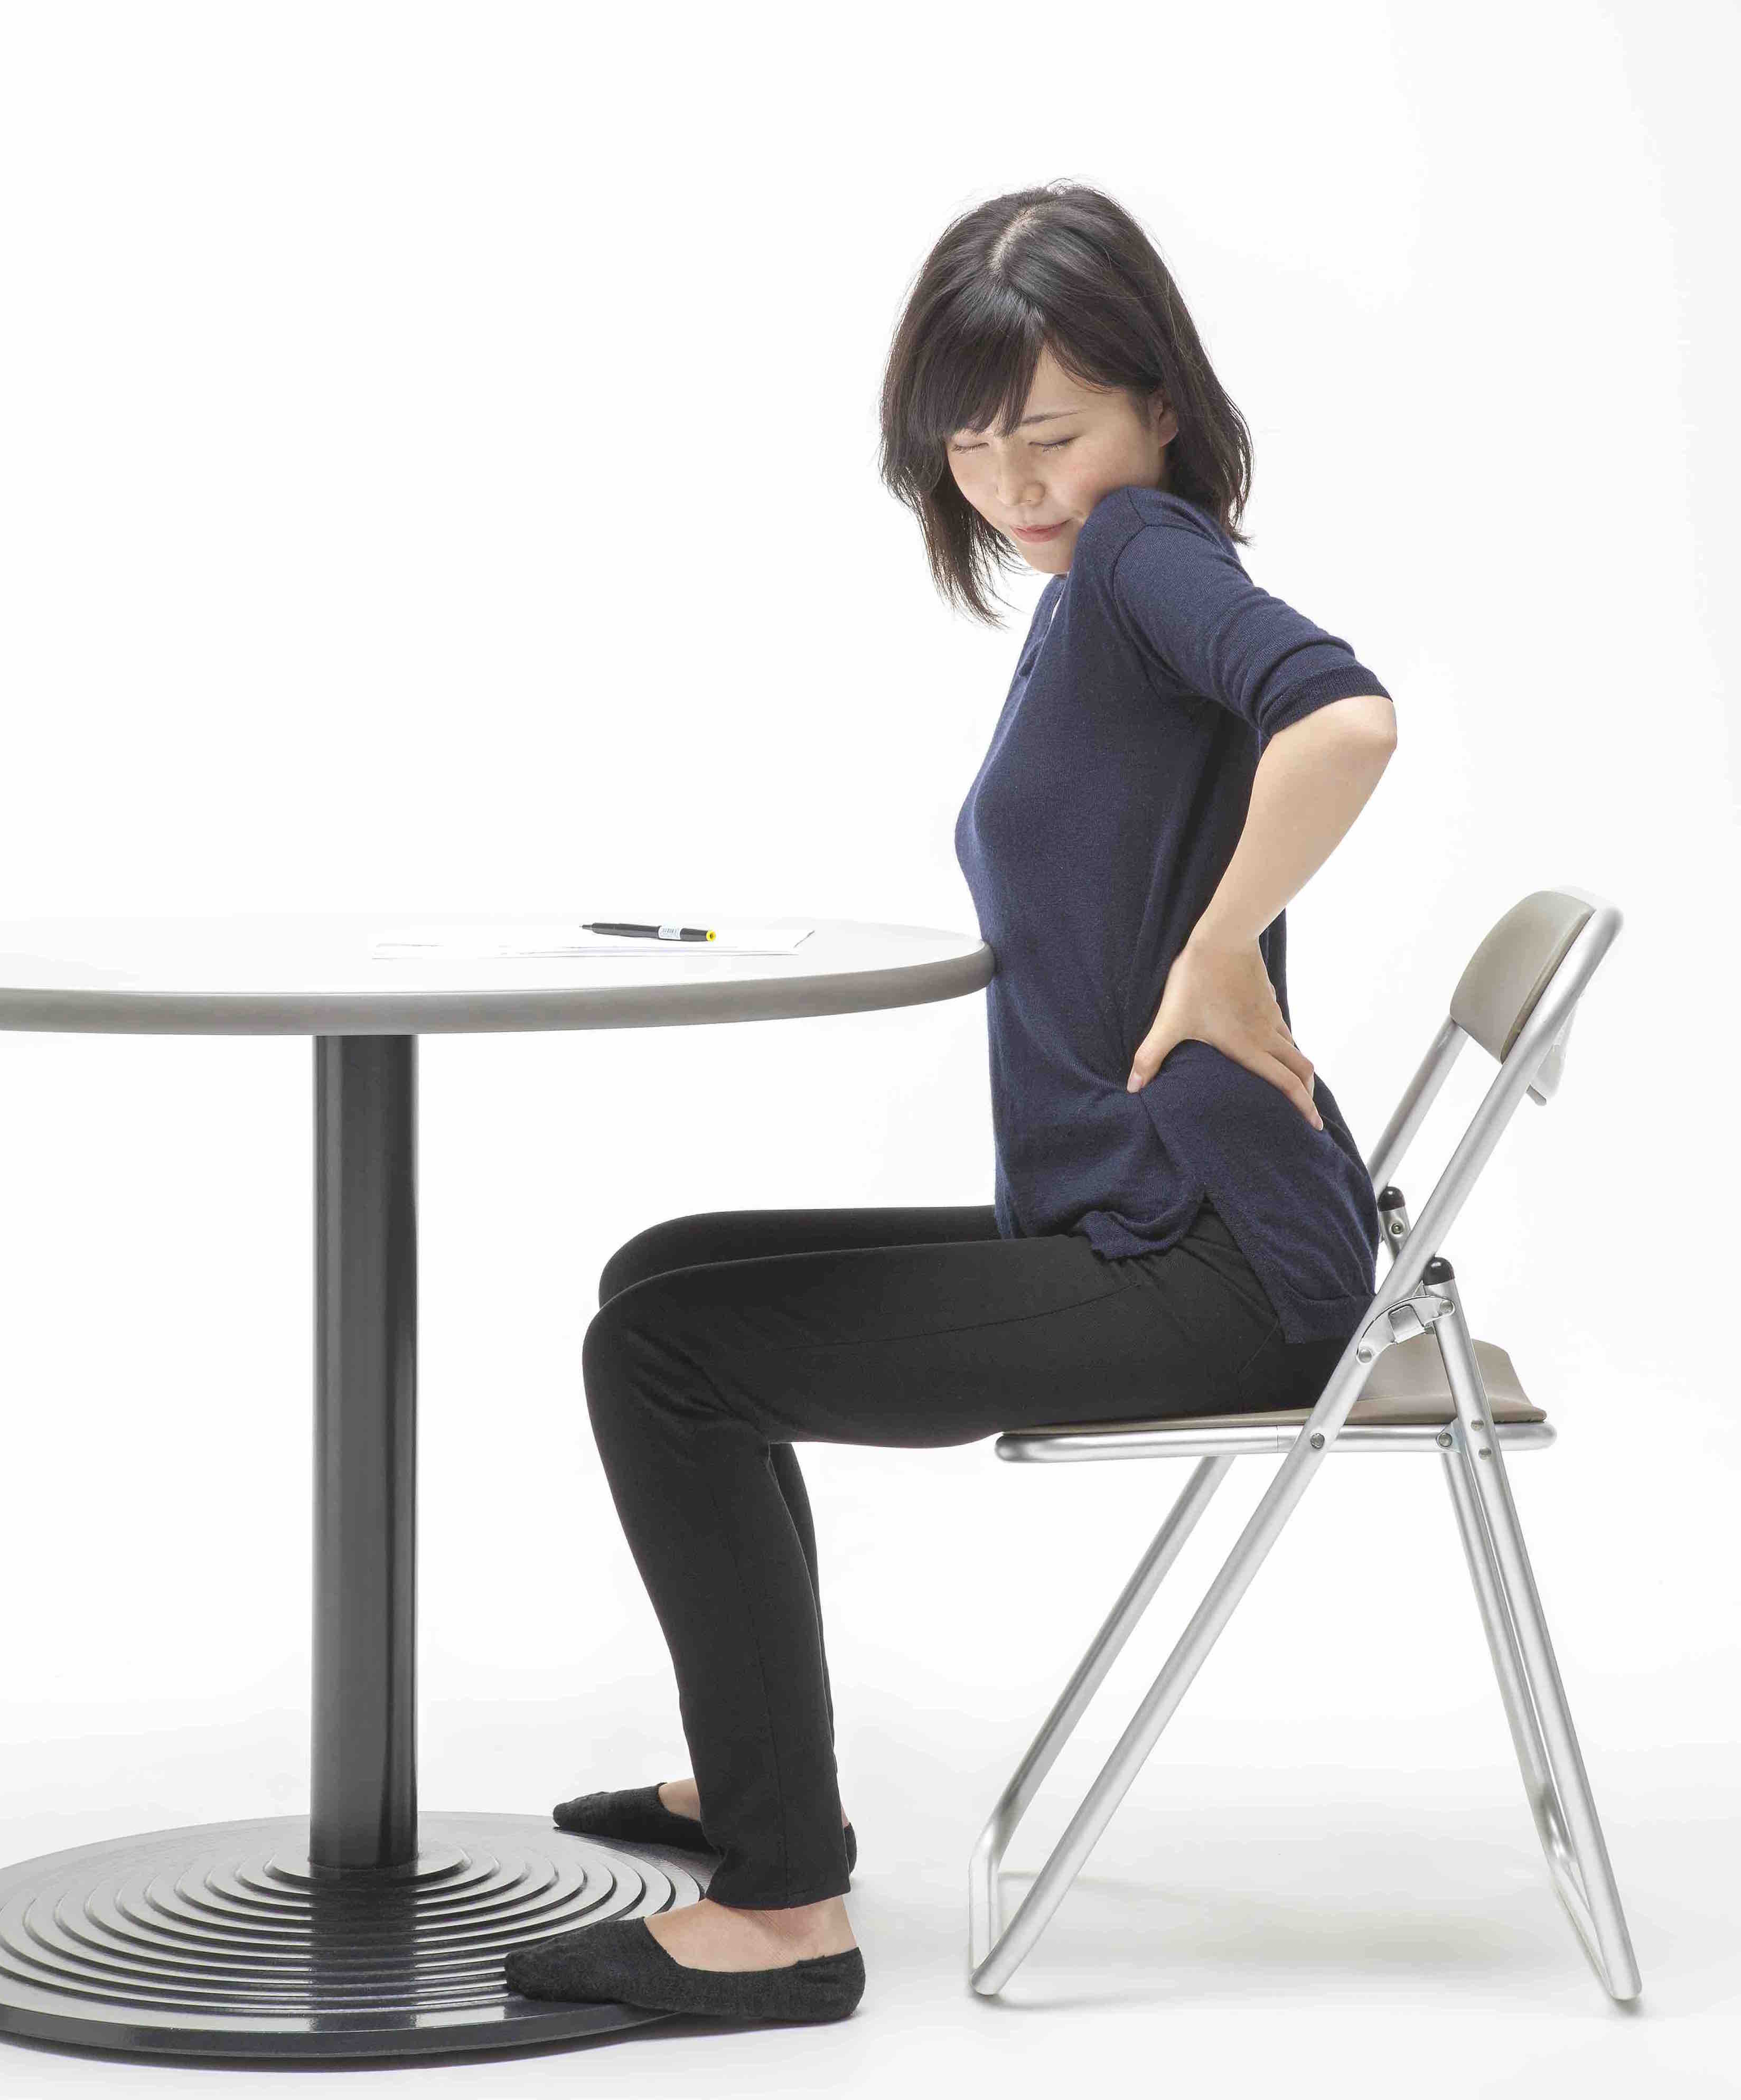 第３回坐骨神経痛にならない座り方 恵比寿 腰痛改善スタジオ マロッズ